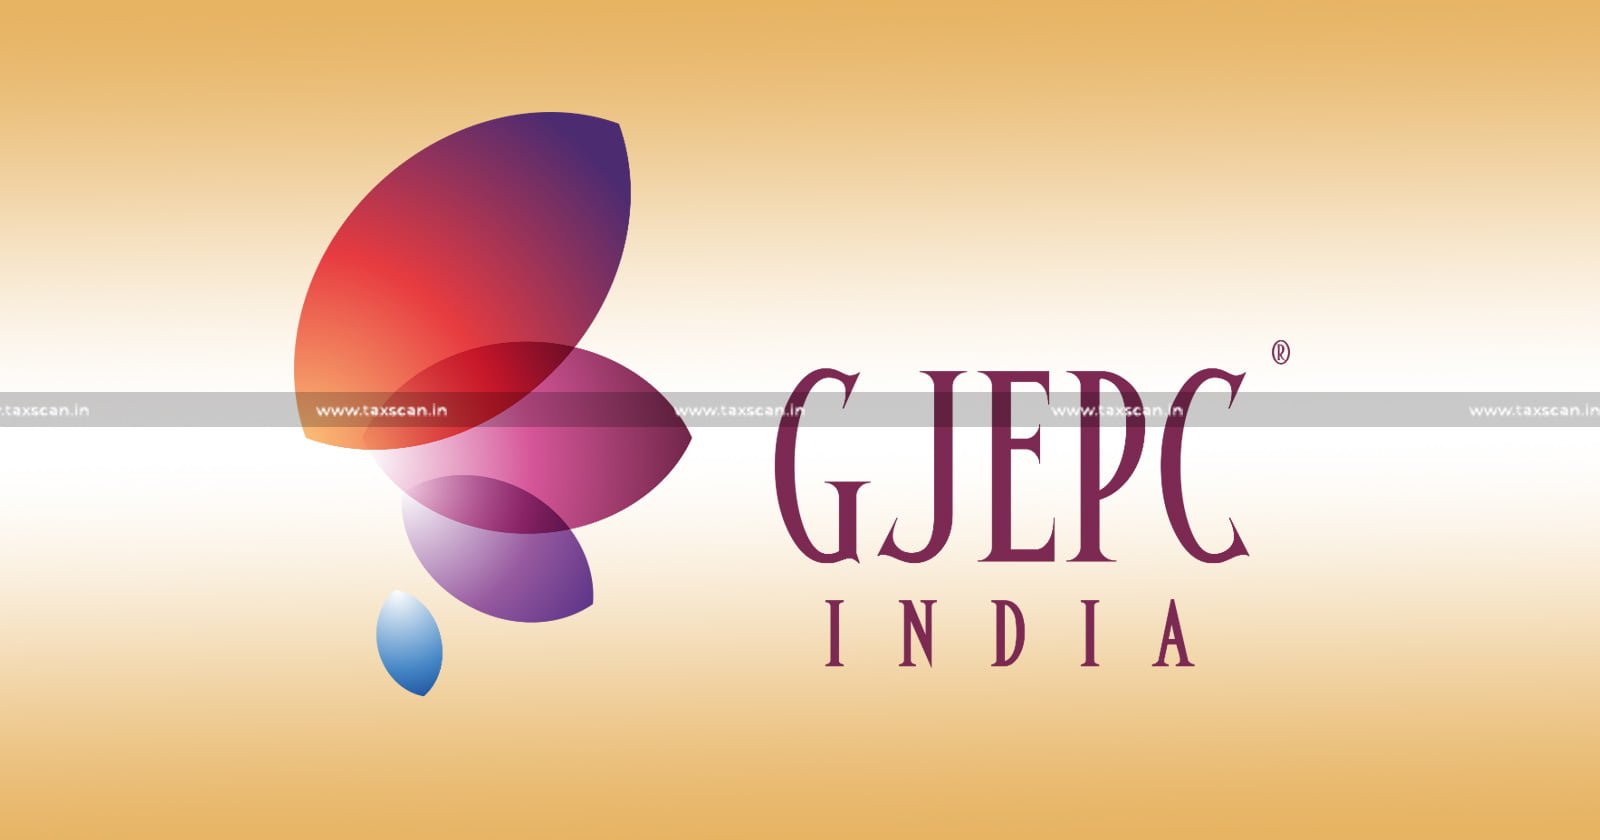 Exhibitions by GJEPC - GJEPC - Commercial Activity - ITAT - Exhibitions - Taxscan